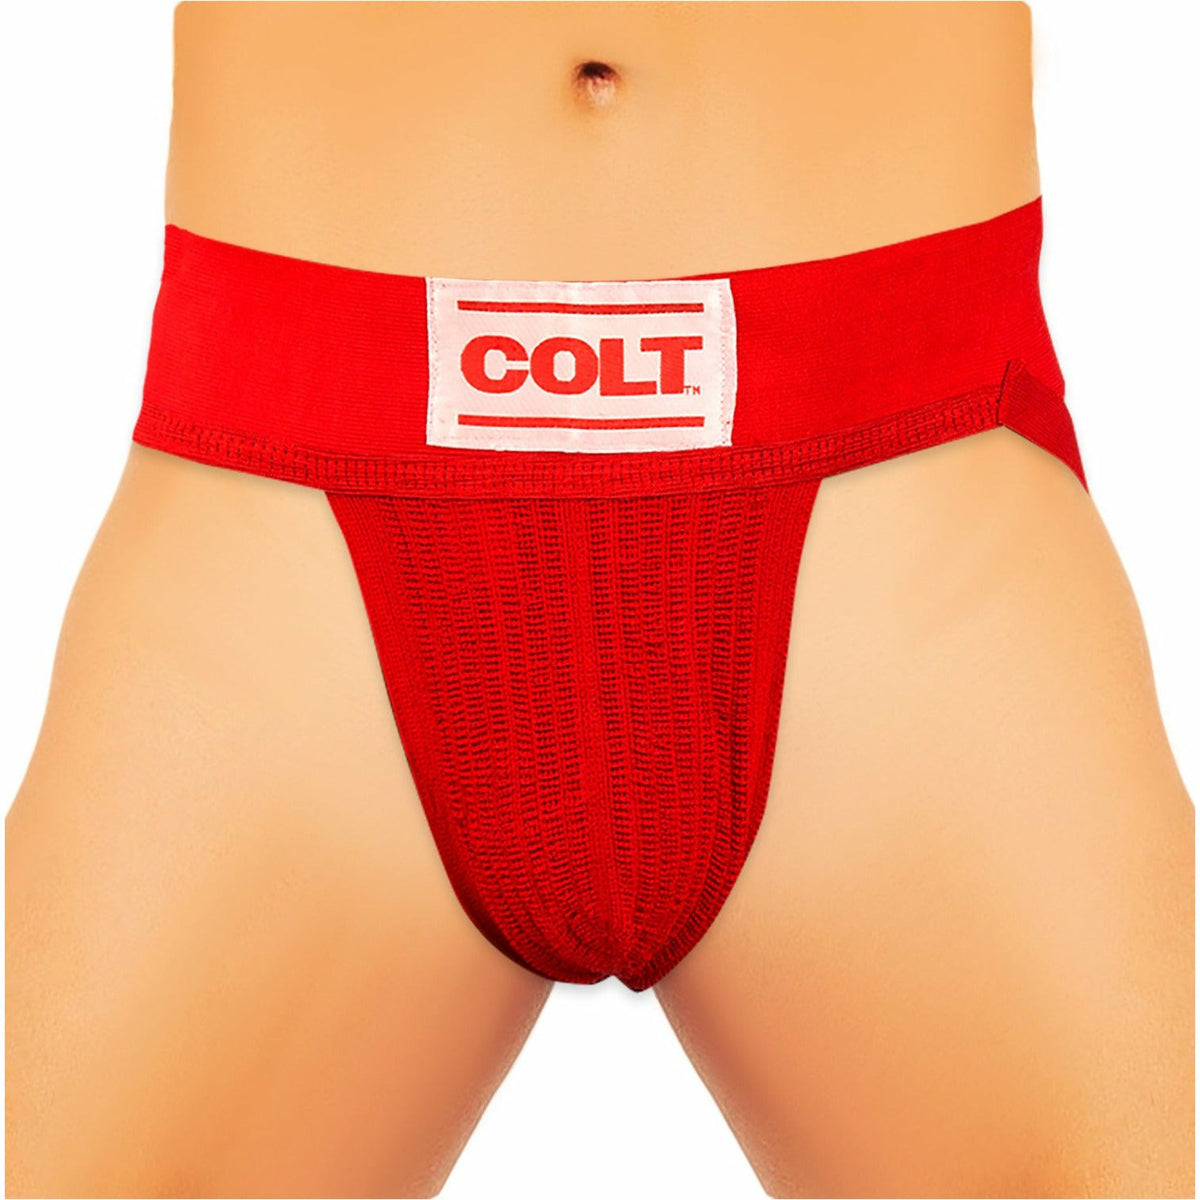 Colt Jockstrap - Red - Small